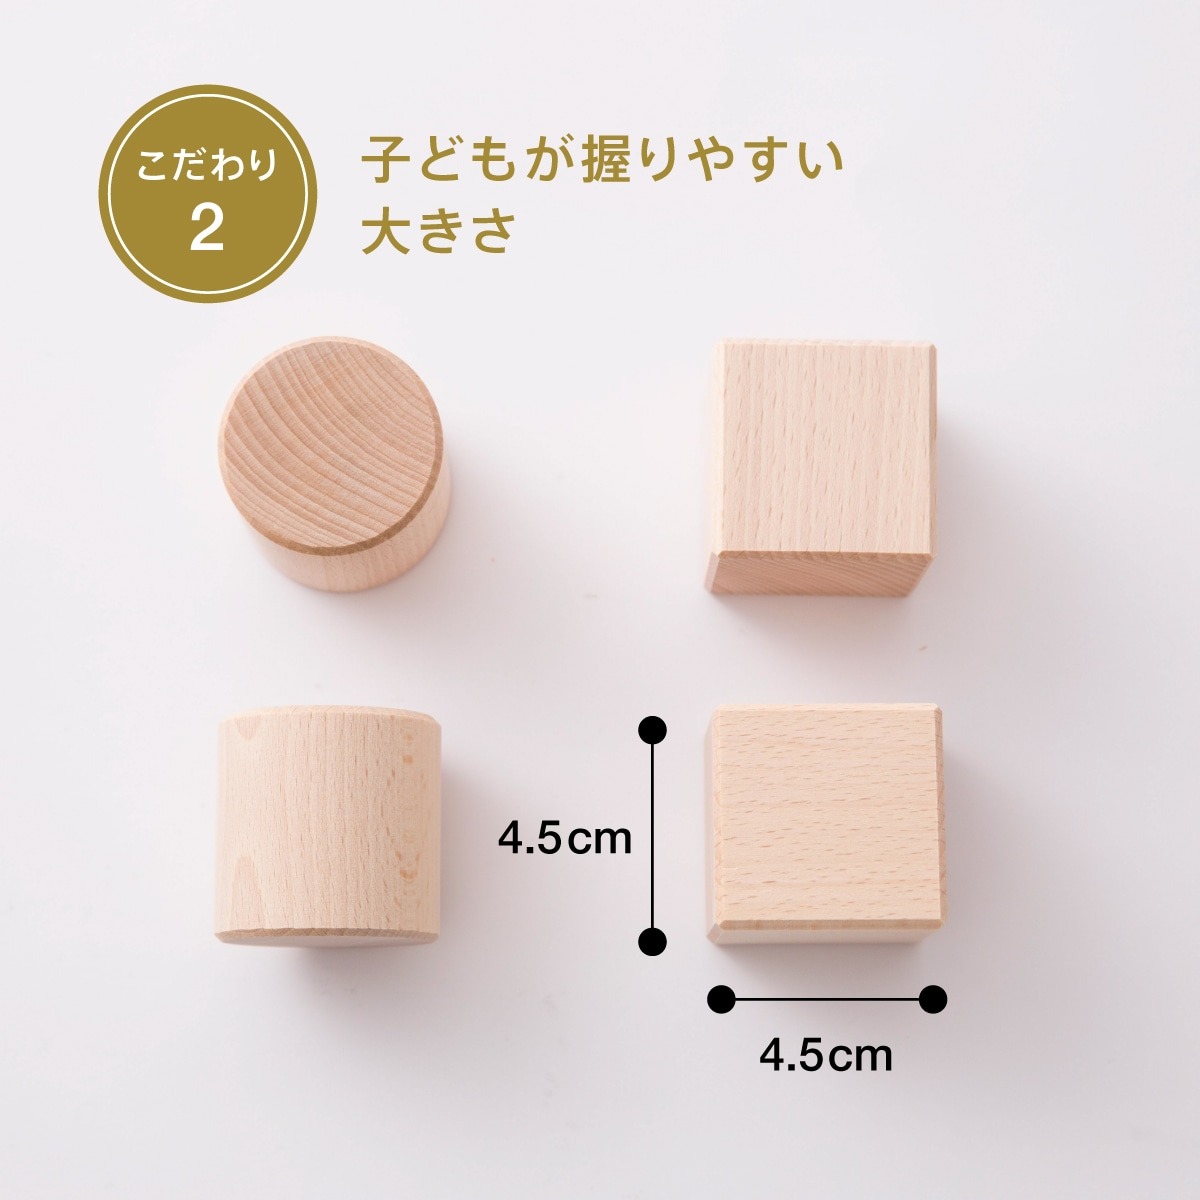 楽天市場積み木 日本製 ボーネルンド オリジナル積み木 カラー 名